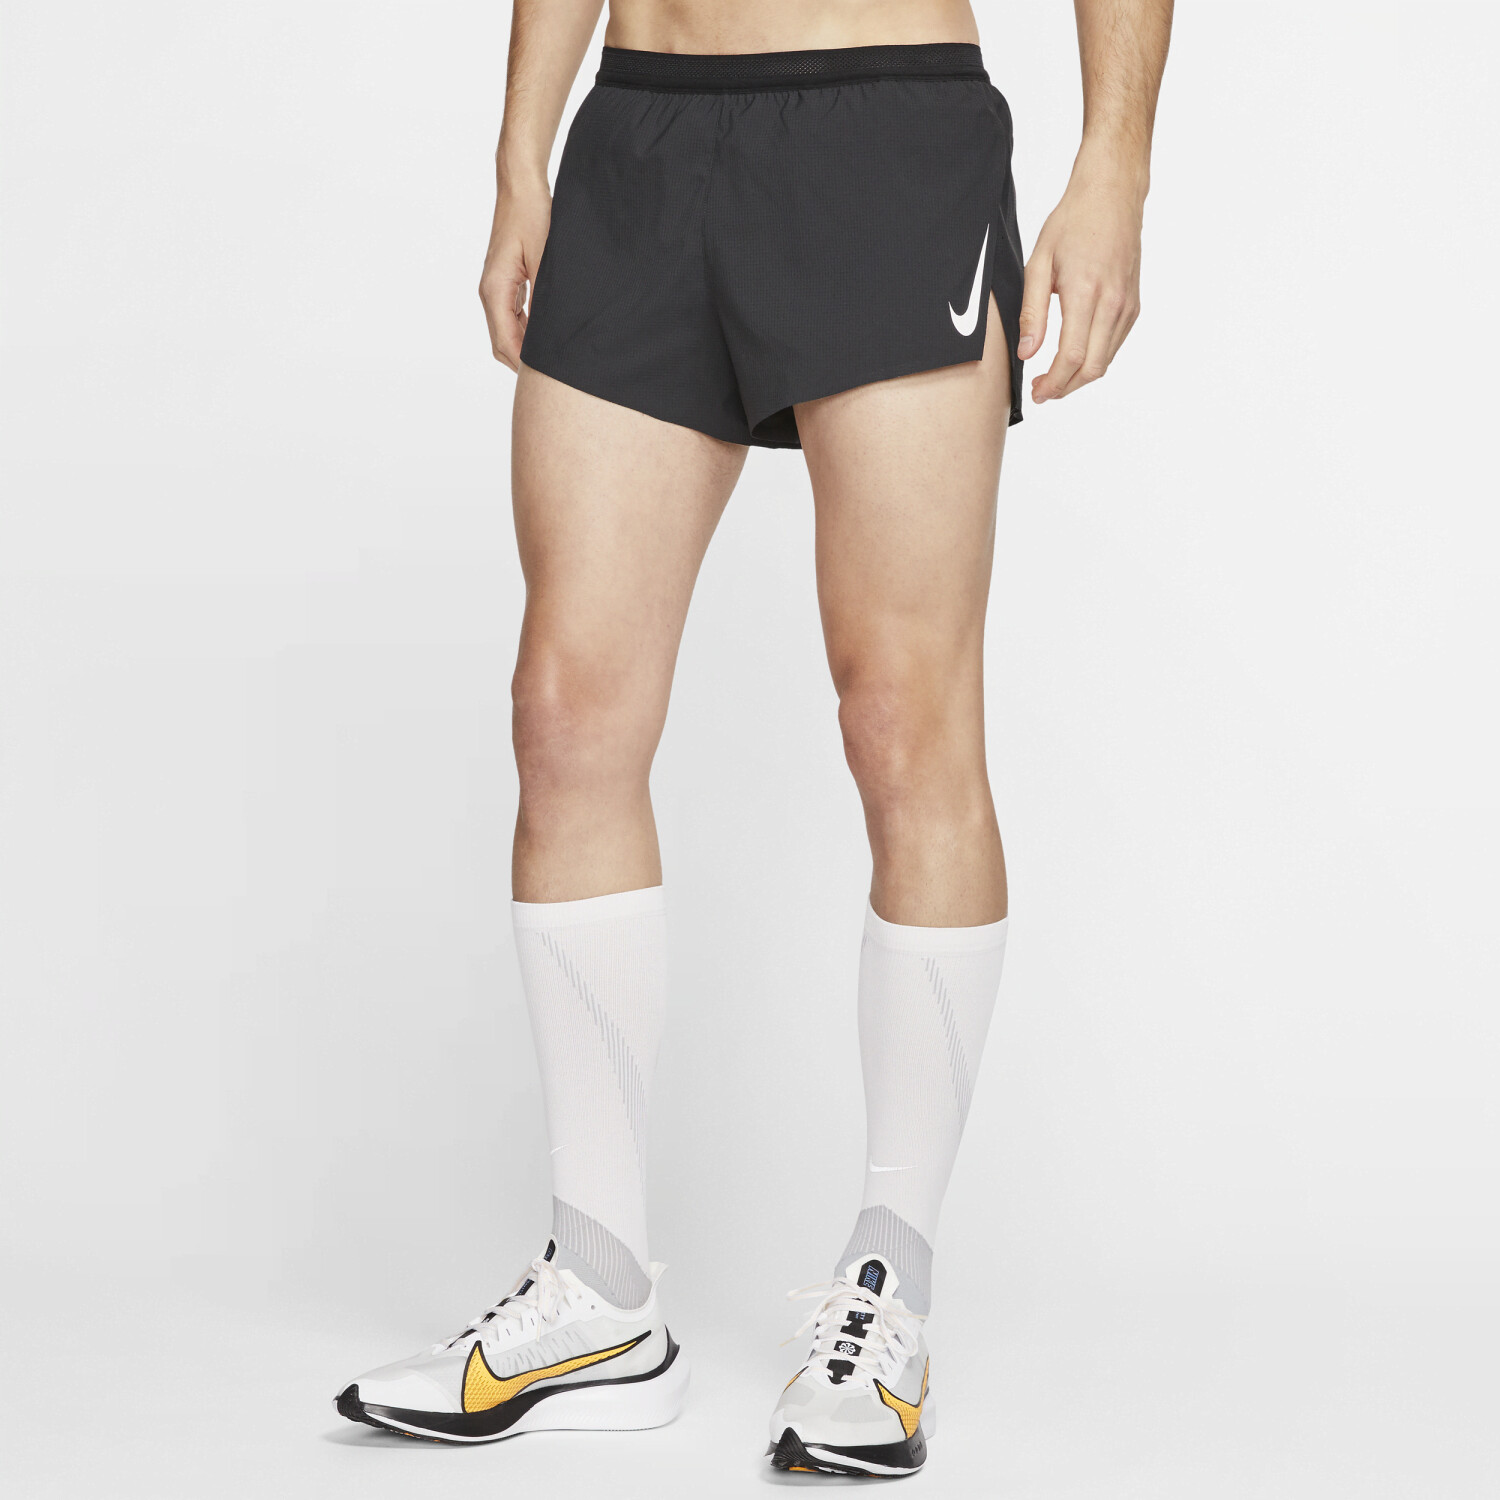 Pantalón Corto + Malla Nike - Negro - Pantalón Running Hombre 